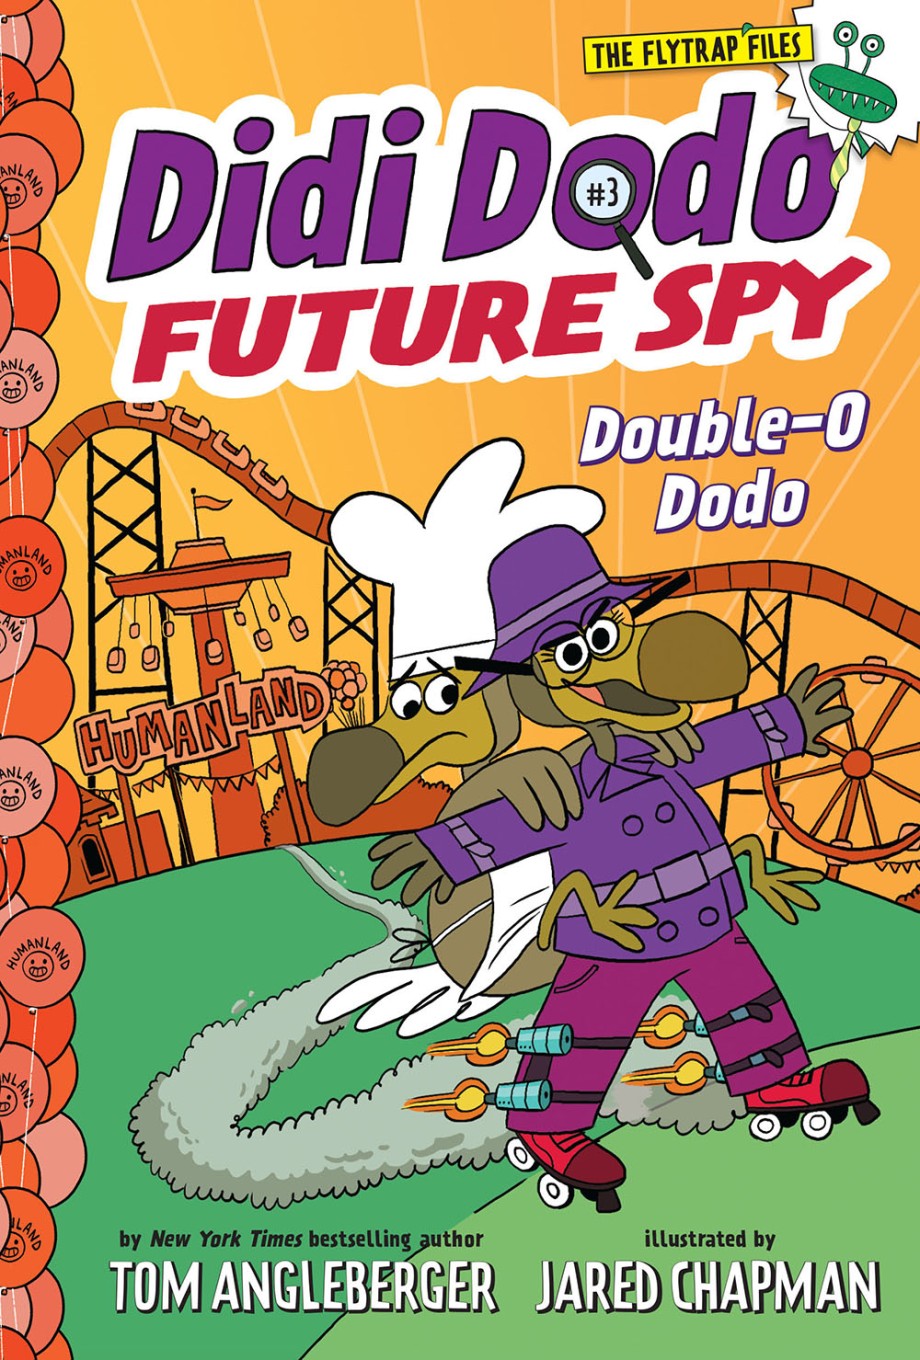 Didi Dodo, Future Spy: Double-O Dodo (Didi Dodo, Future Spy #3) 